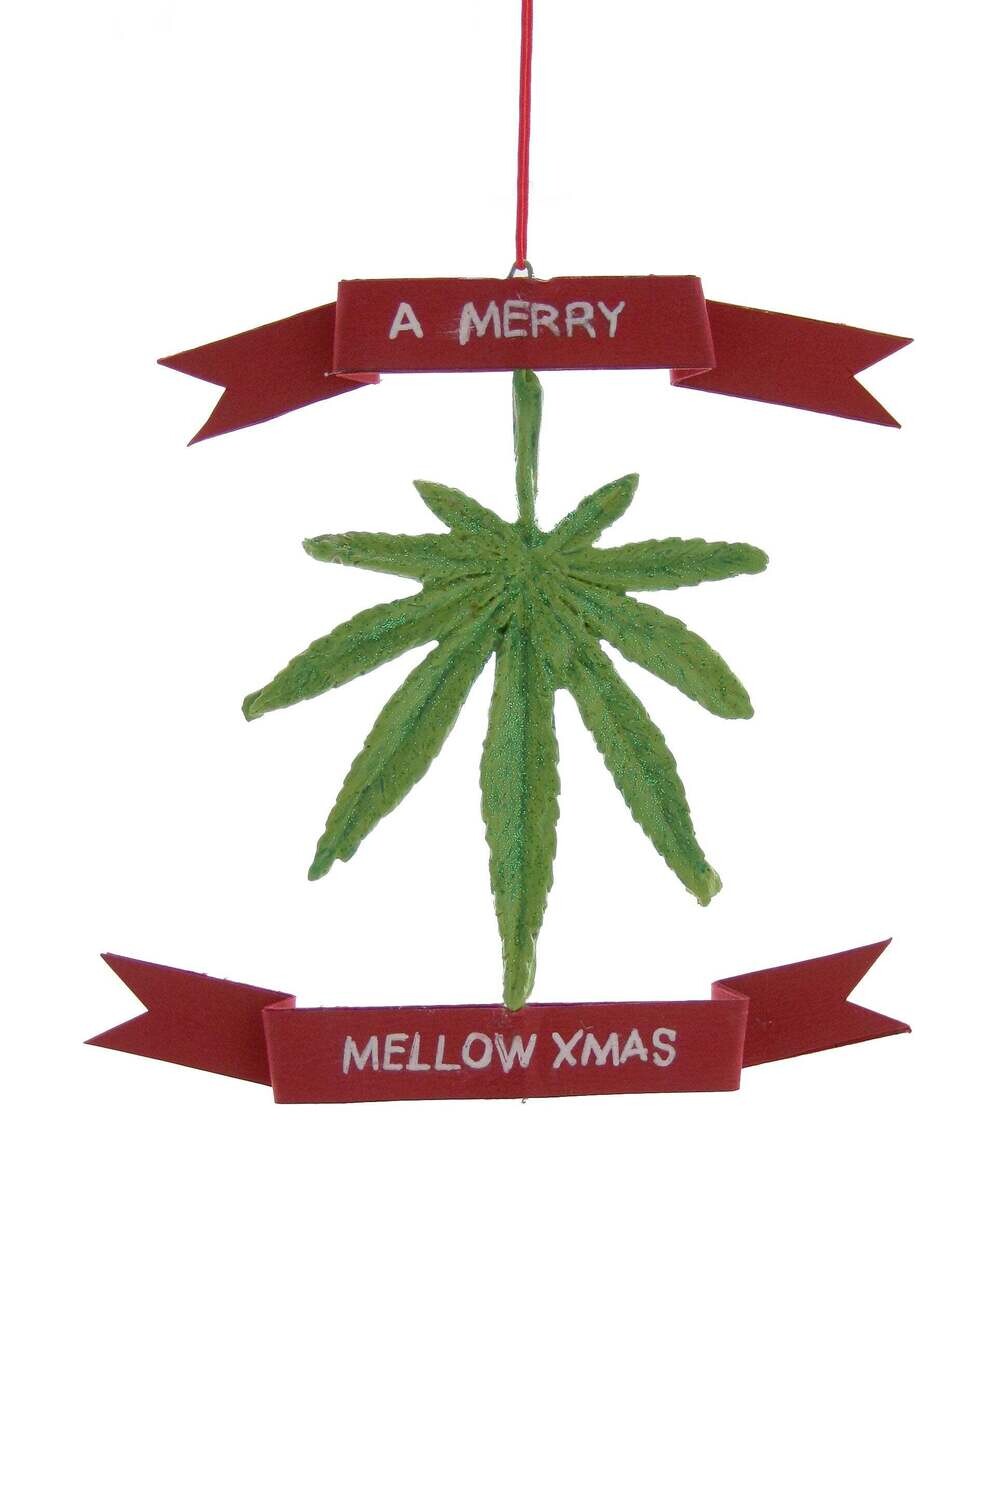 Merry Mellow